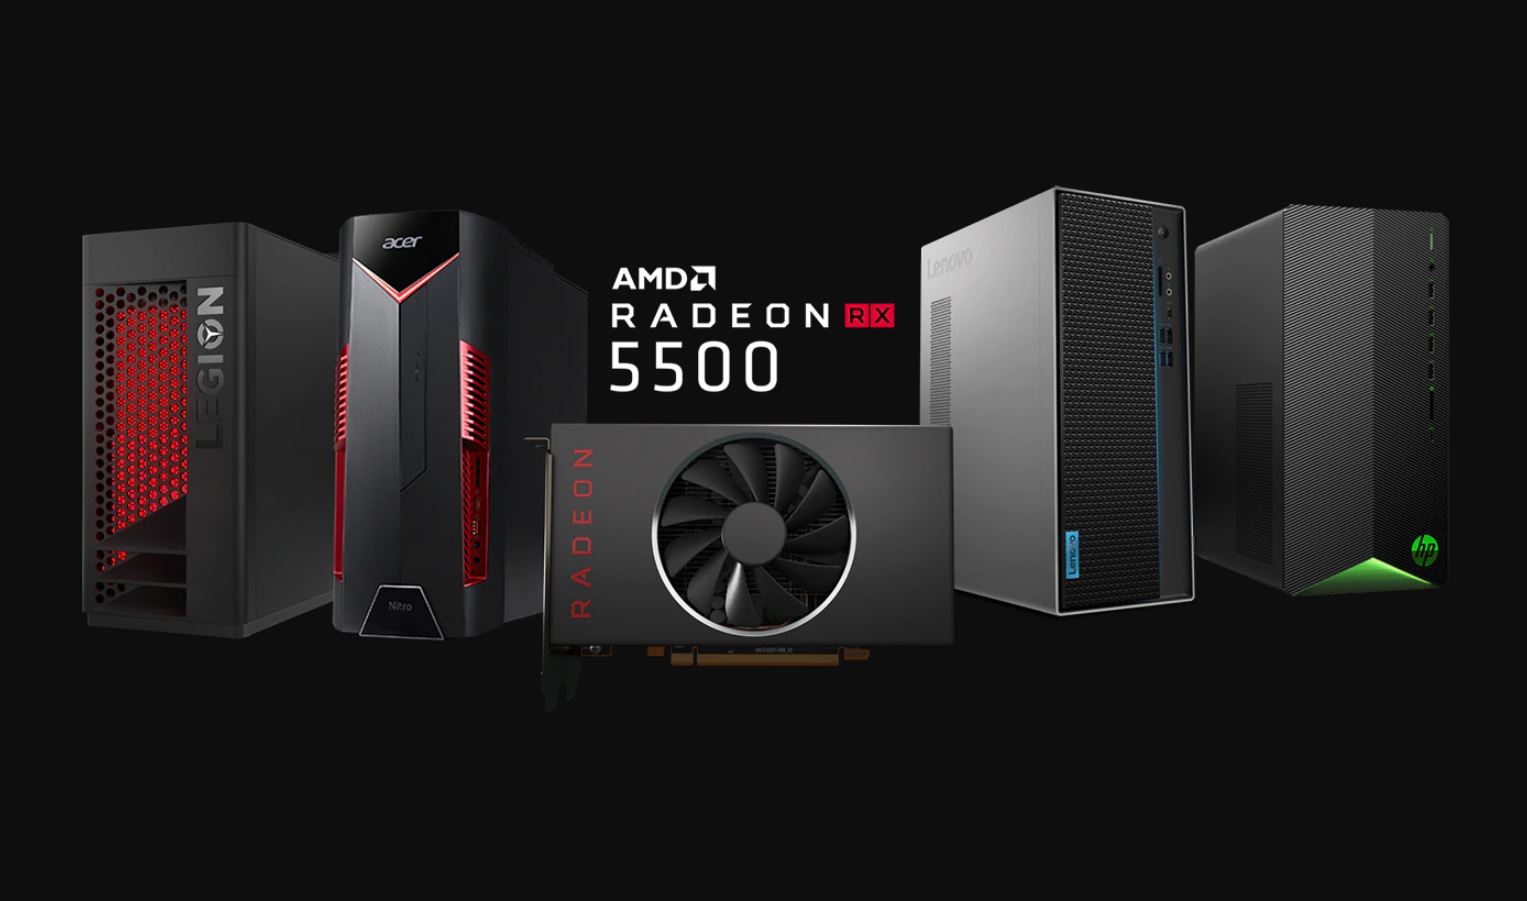 AMD Radeon 5500 brings a secret weapon 